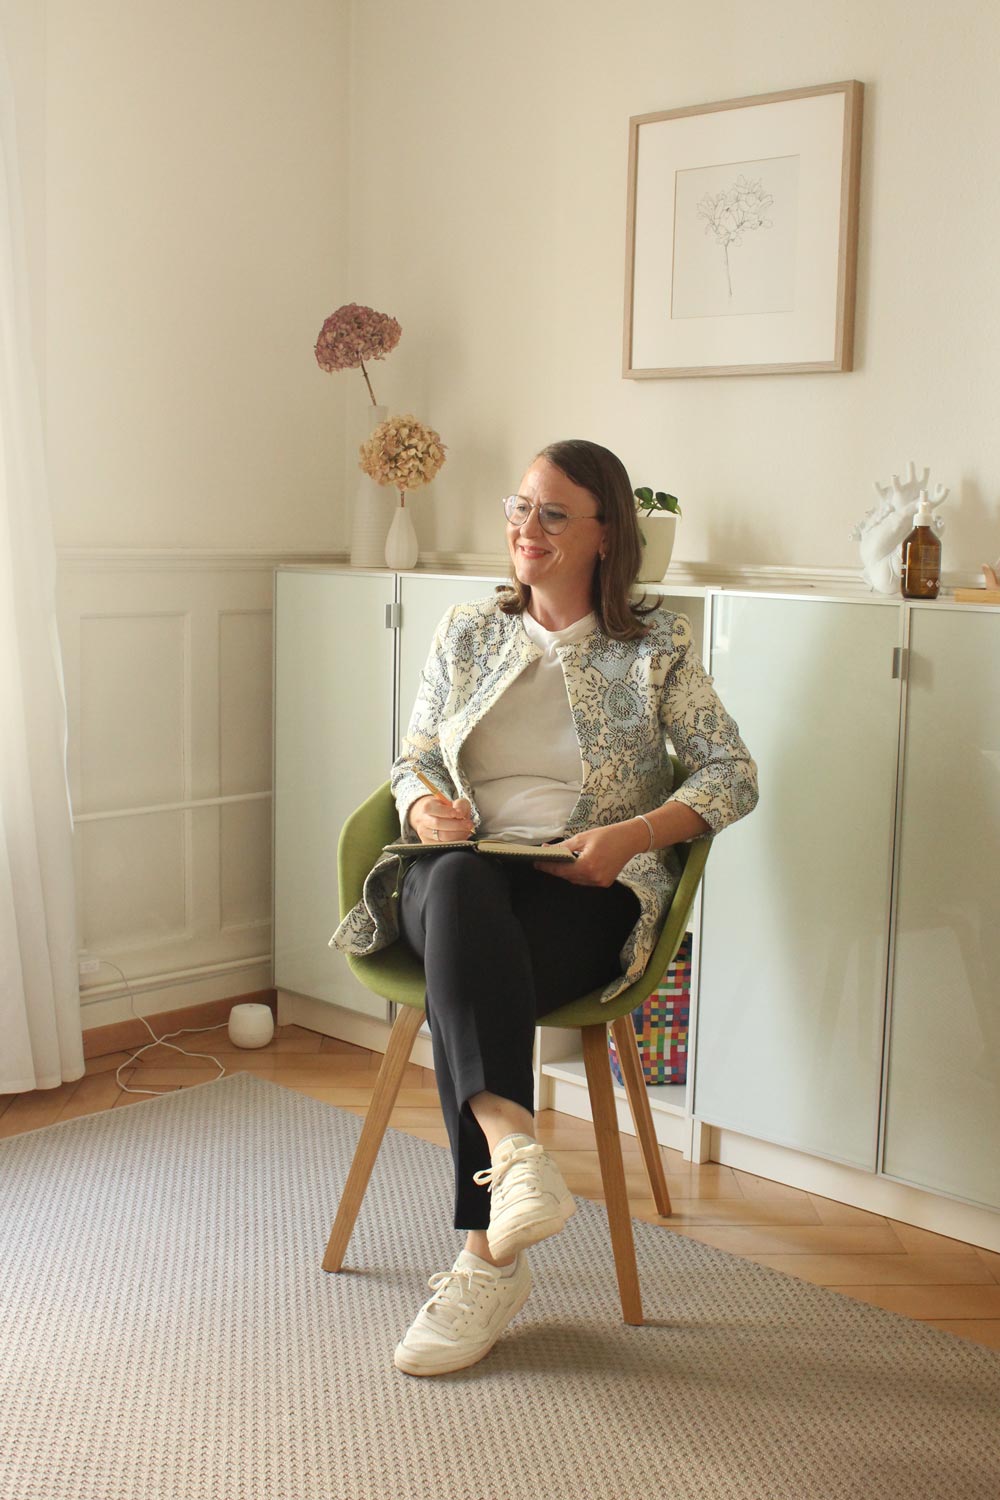 Claudine Haus, Psychotherapeutische Begleitung, Praxis Familie entsteht, Zürich